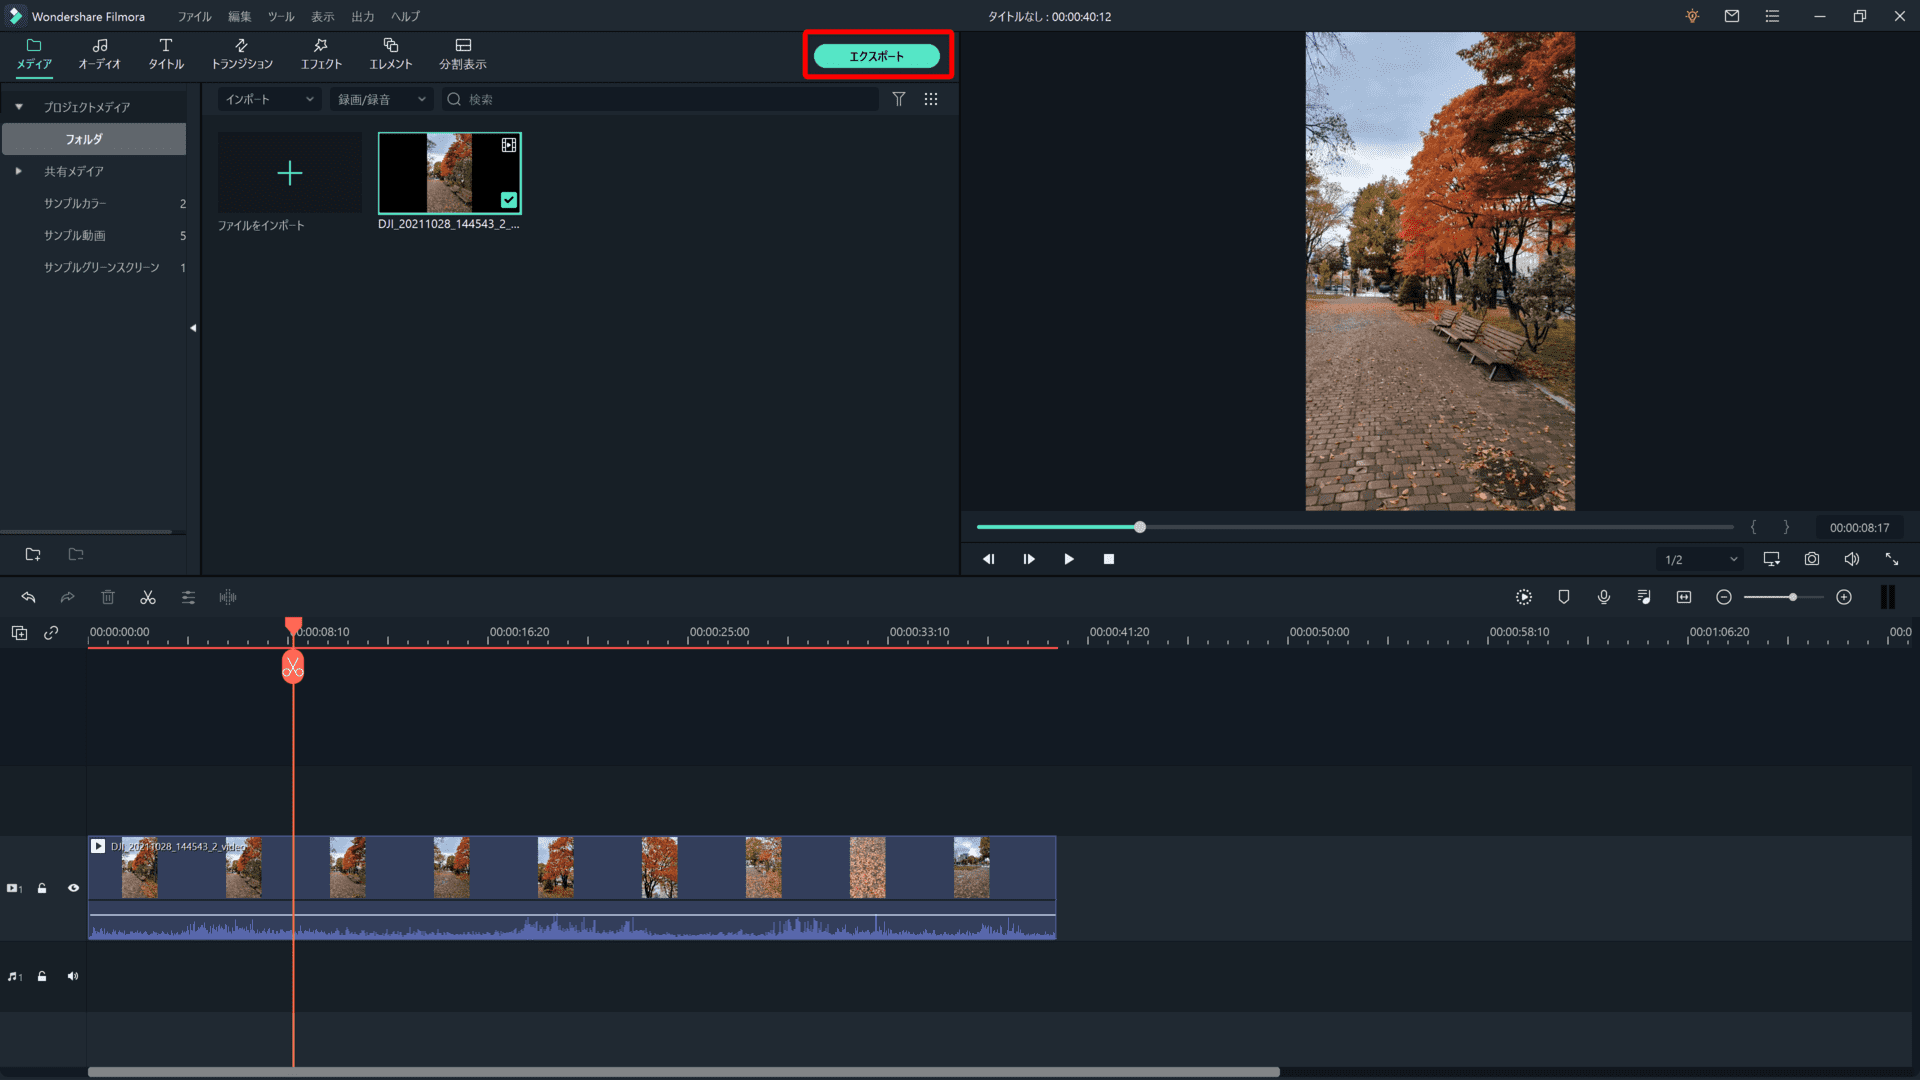 Filmora Xとは？｜動画編集ソフトFilmora Xの概要や基本的な使い方について解説｜基本的な使い方について：最後に編集した動画を動画ファイルとして保存してみましょう。 まずメディアライブラリーにある「エクスポート」をクリックします。